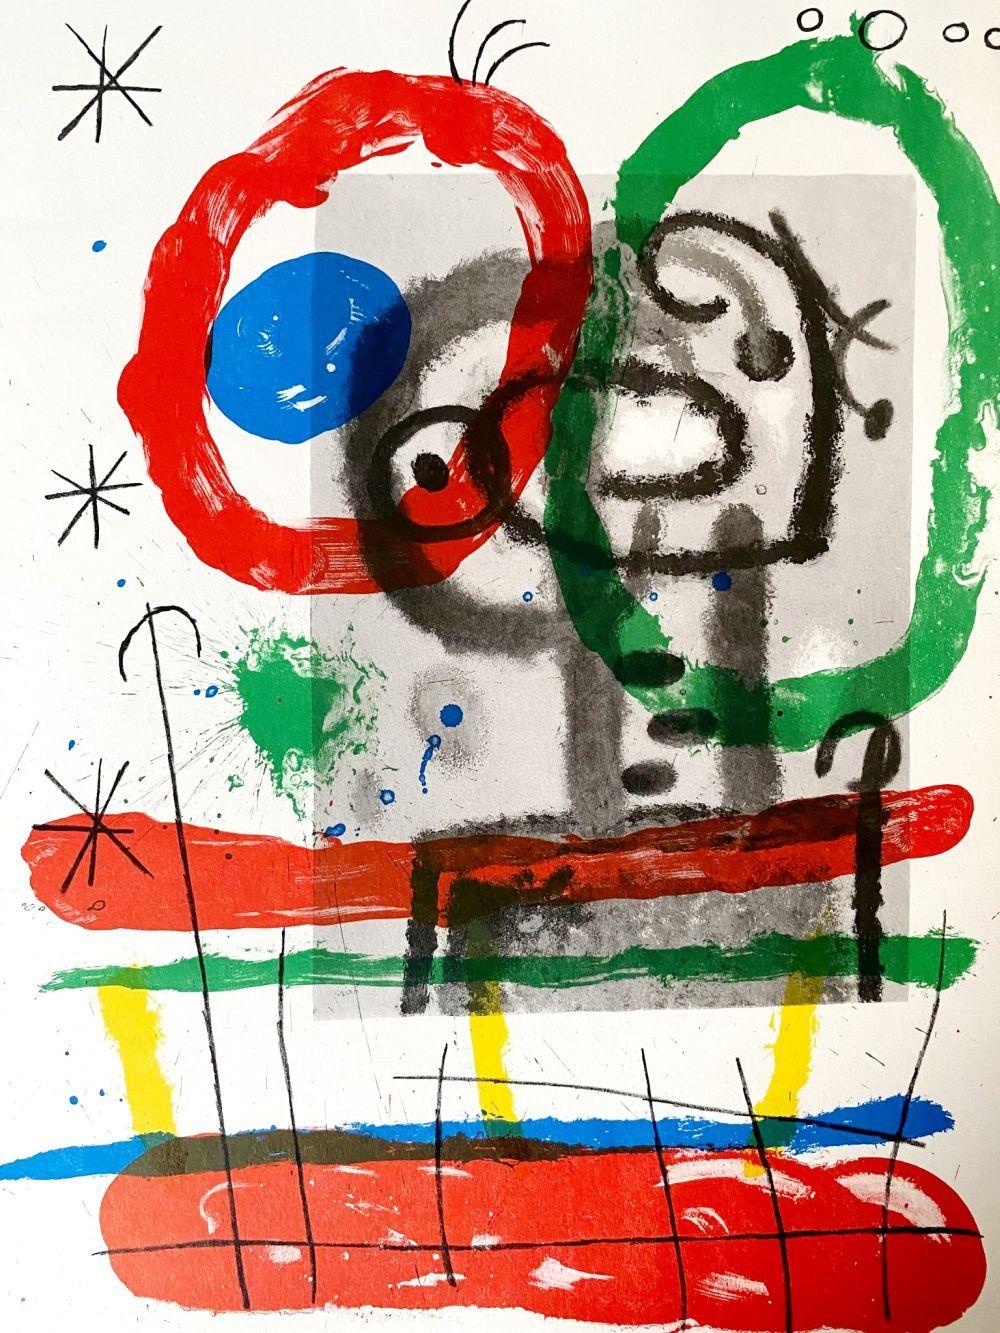 Abstract Print Joan Miró - Miró, Composition, Derrière le miroir (d'après)